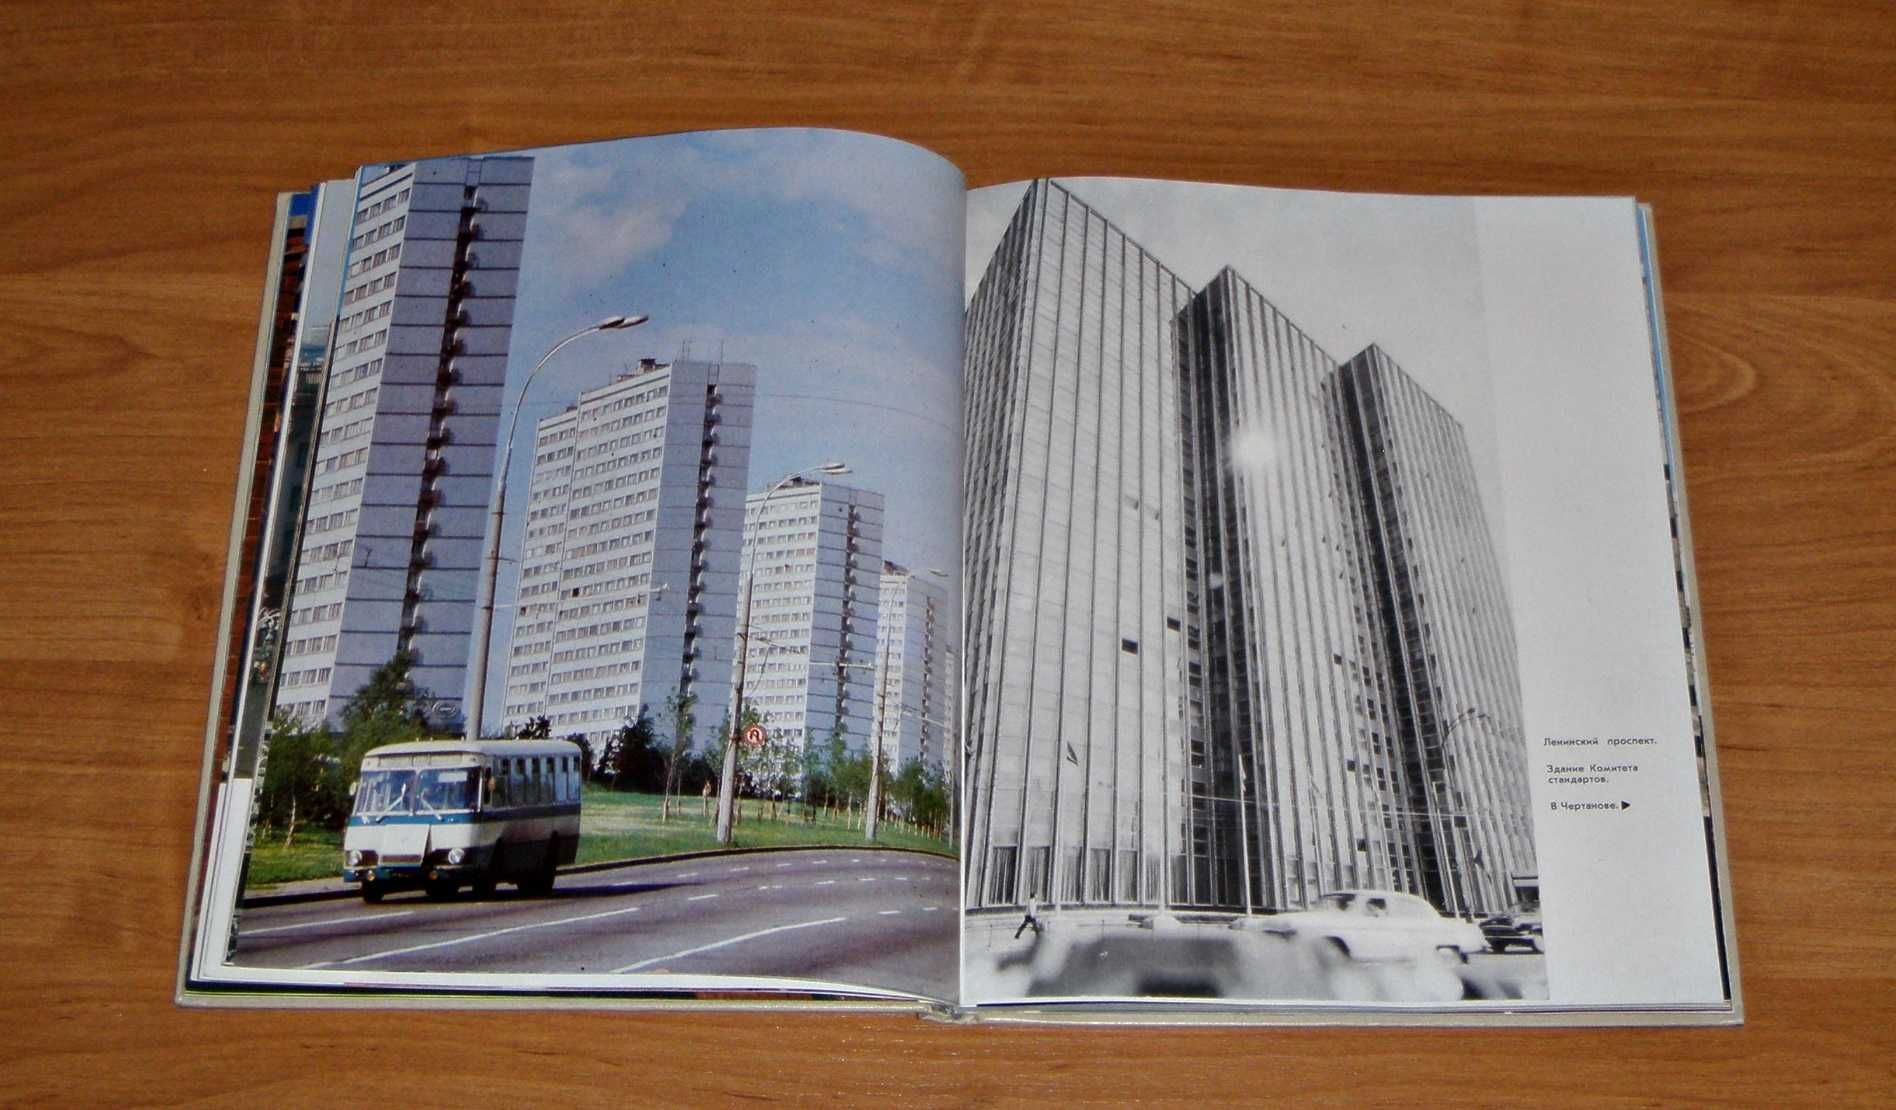 MOSKWA Album 1977 rok język rosyjski stare zdjęcia